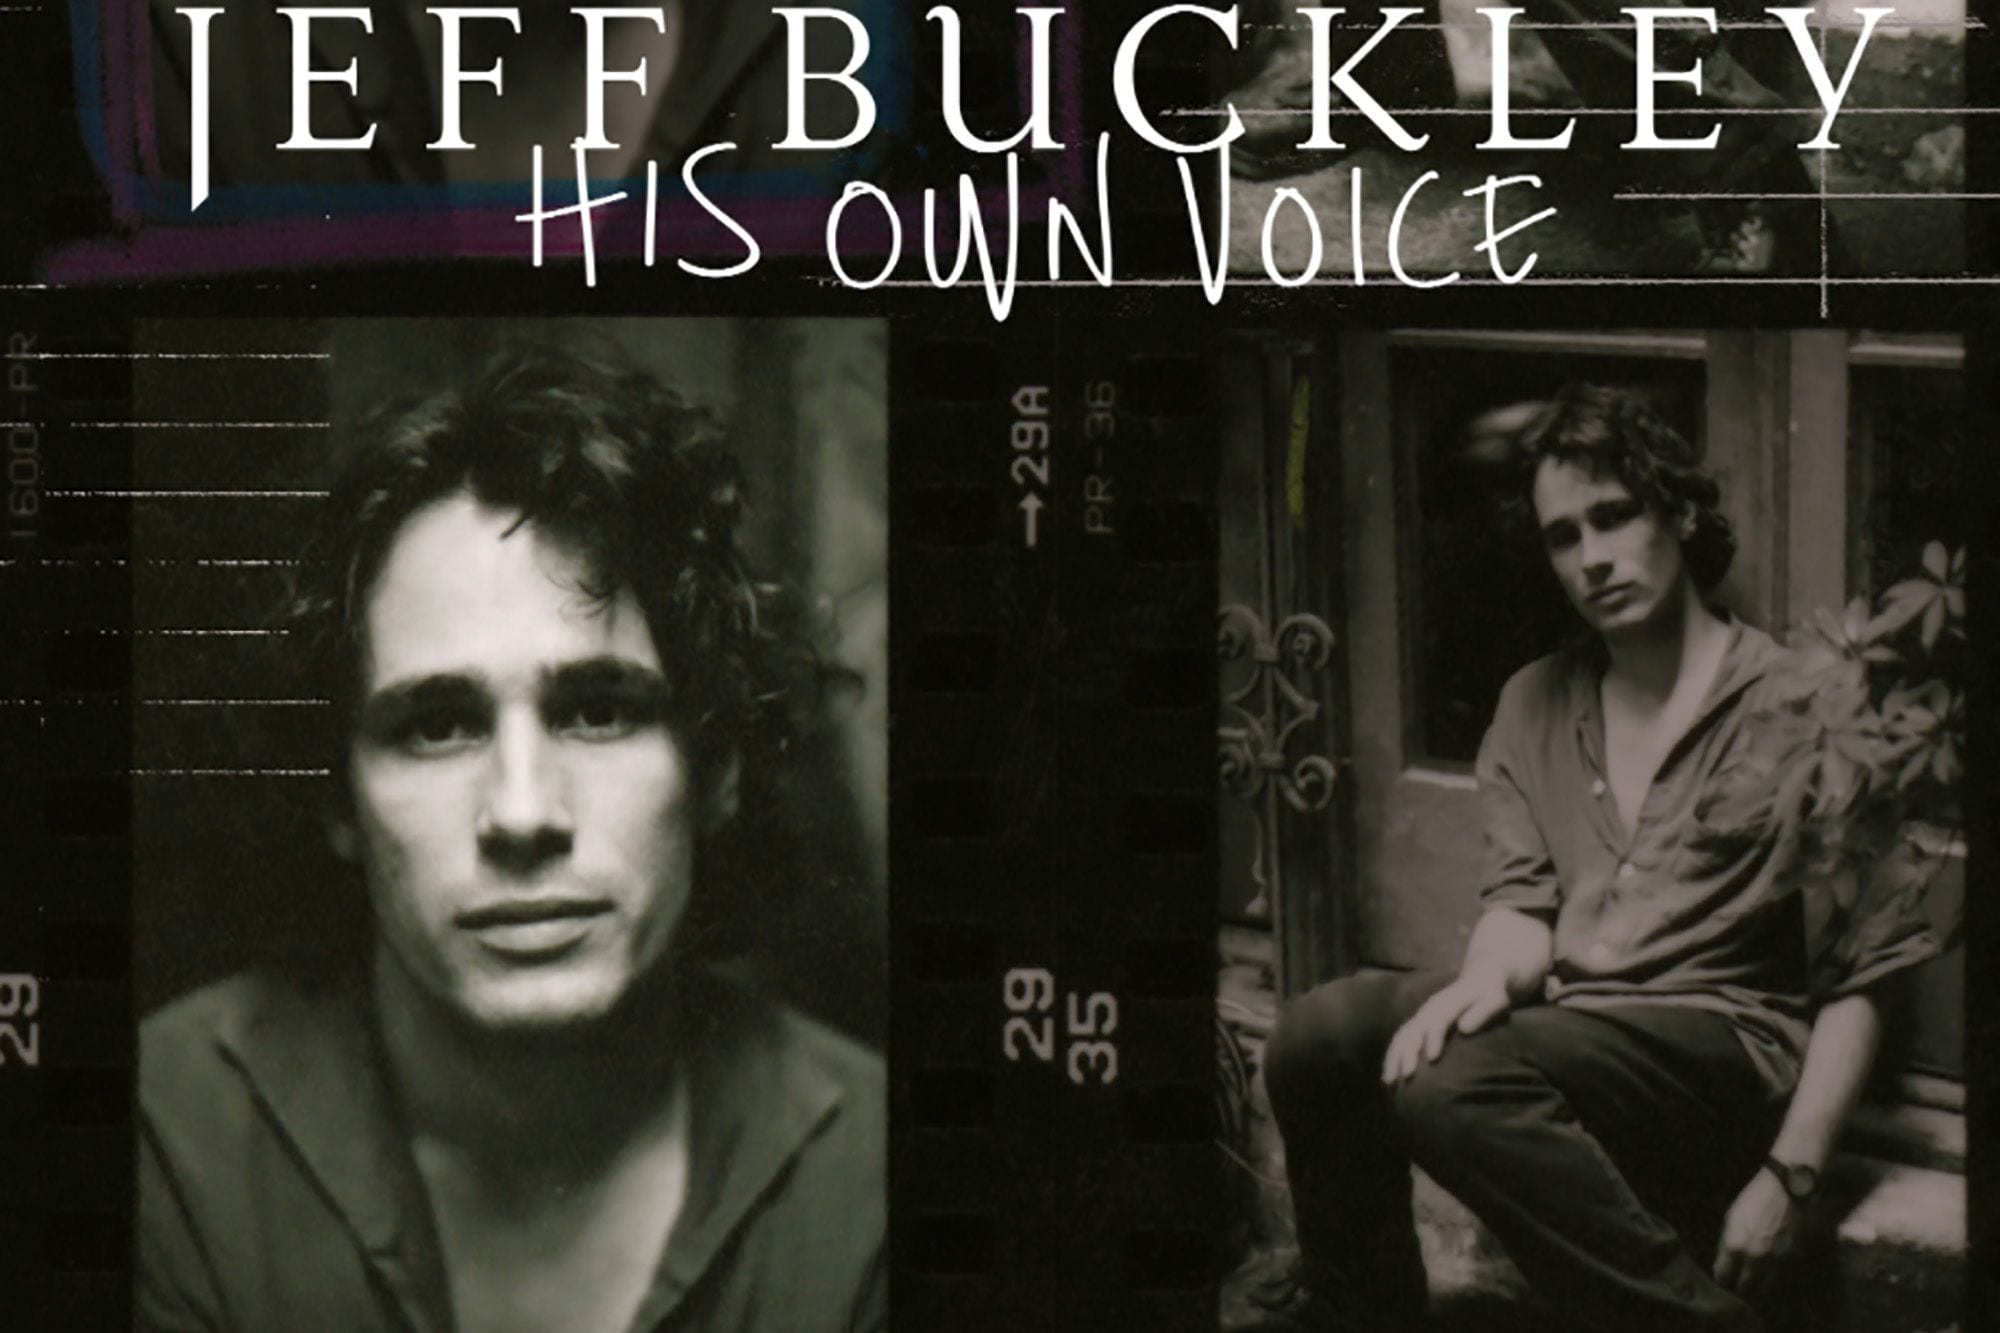 Jeff Buckley’s Voice Returns